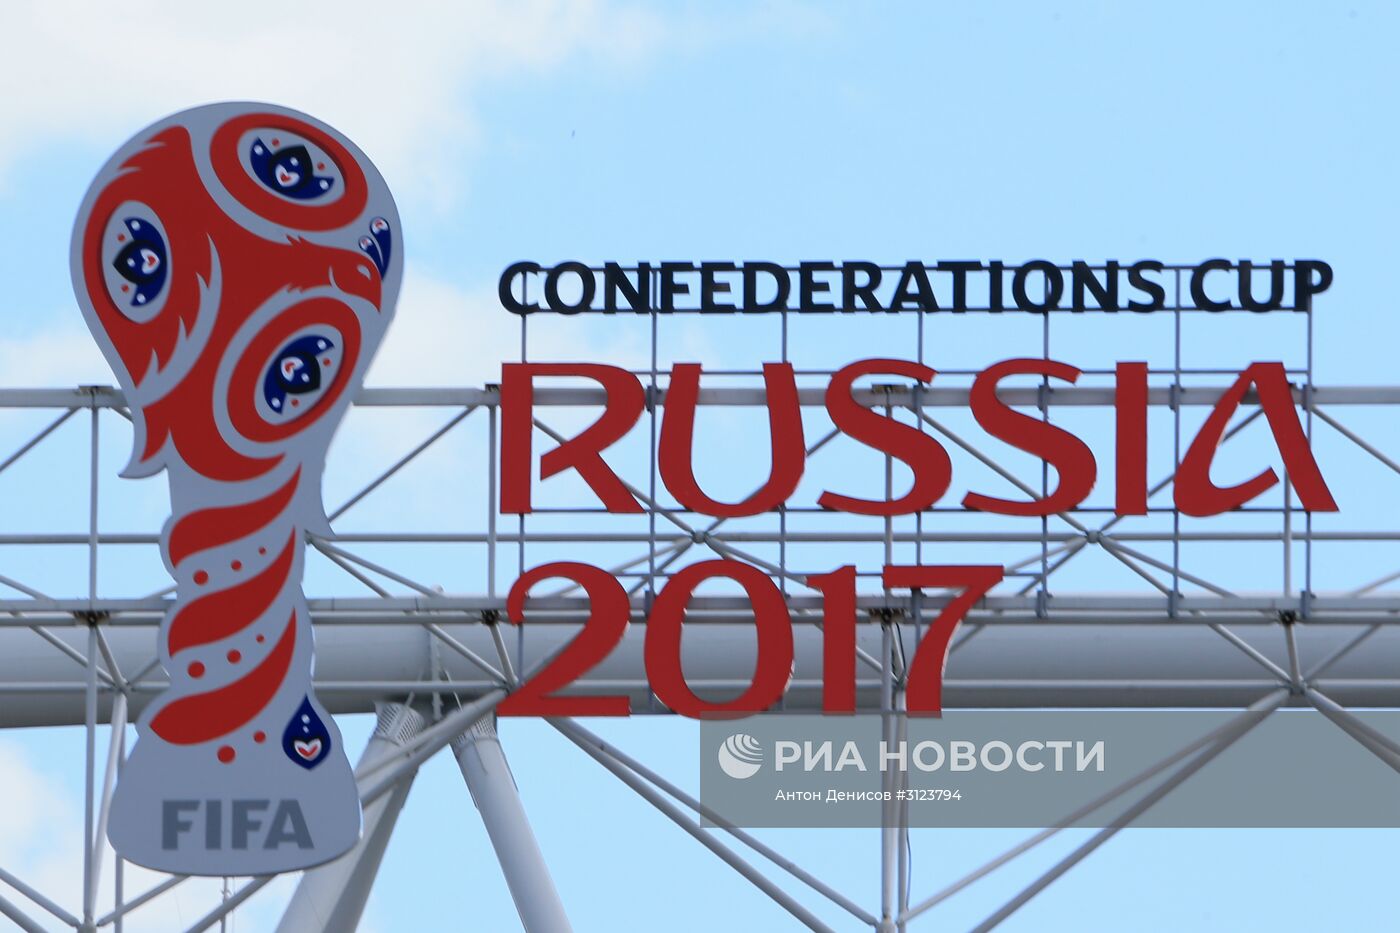 Подготовка к Кубку конфедераций 2017 в Москве